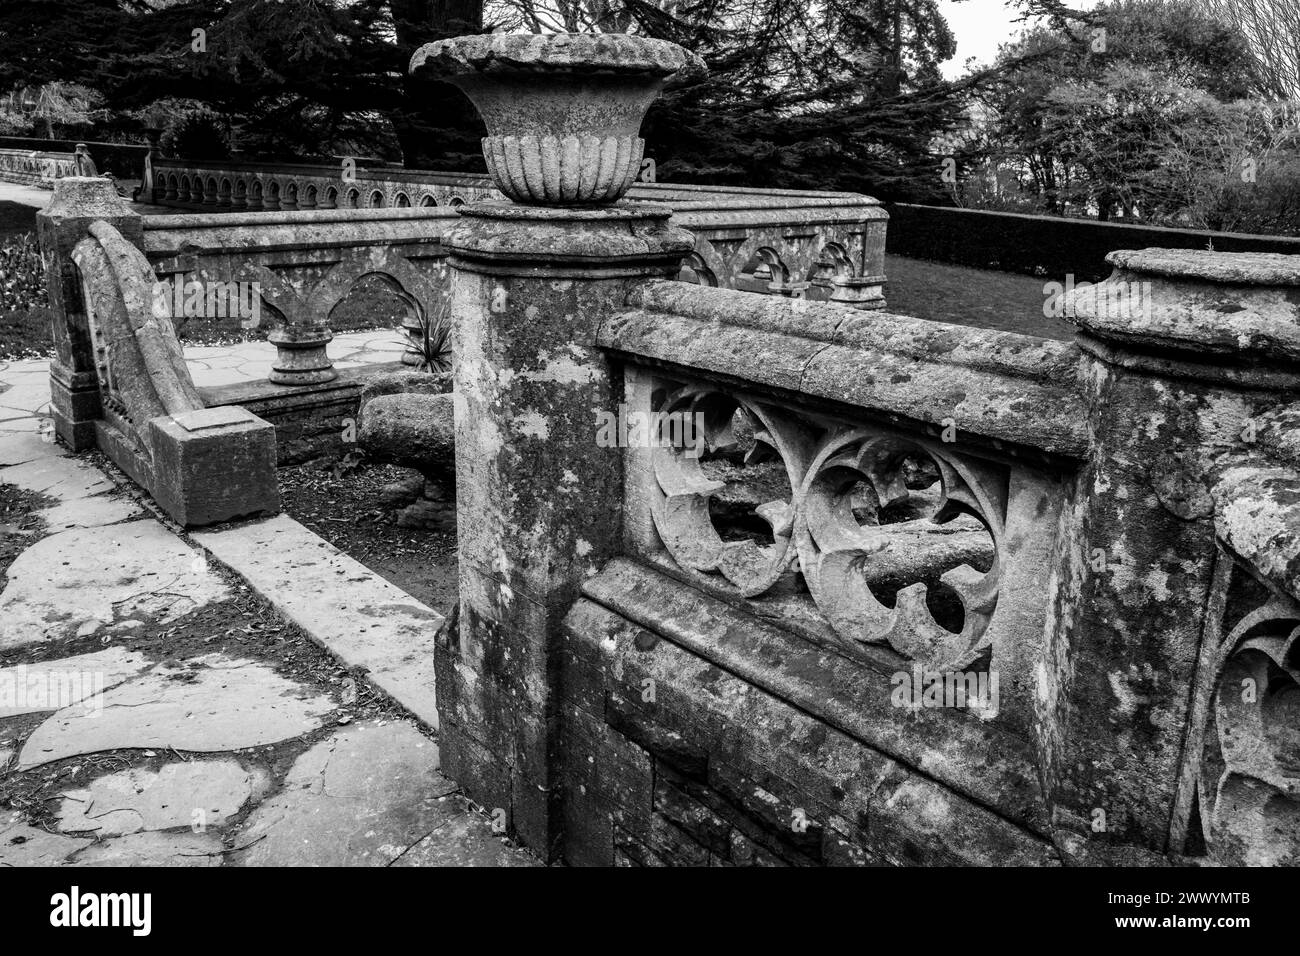 Giardino ornamentale vittoriano in pietra e spianata in stile neogotico. Immagine in bianco e nero. Cardiff, Galles. Muratura decorativa. Foto Stock